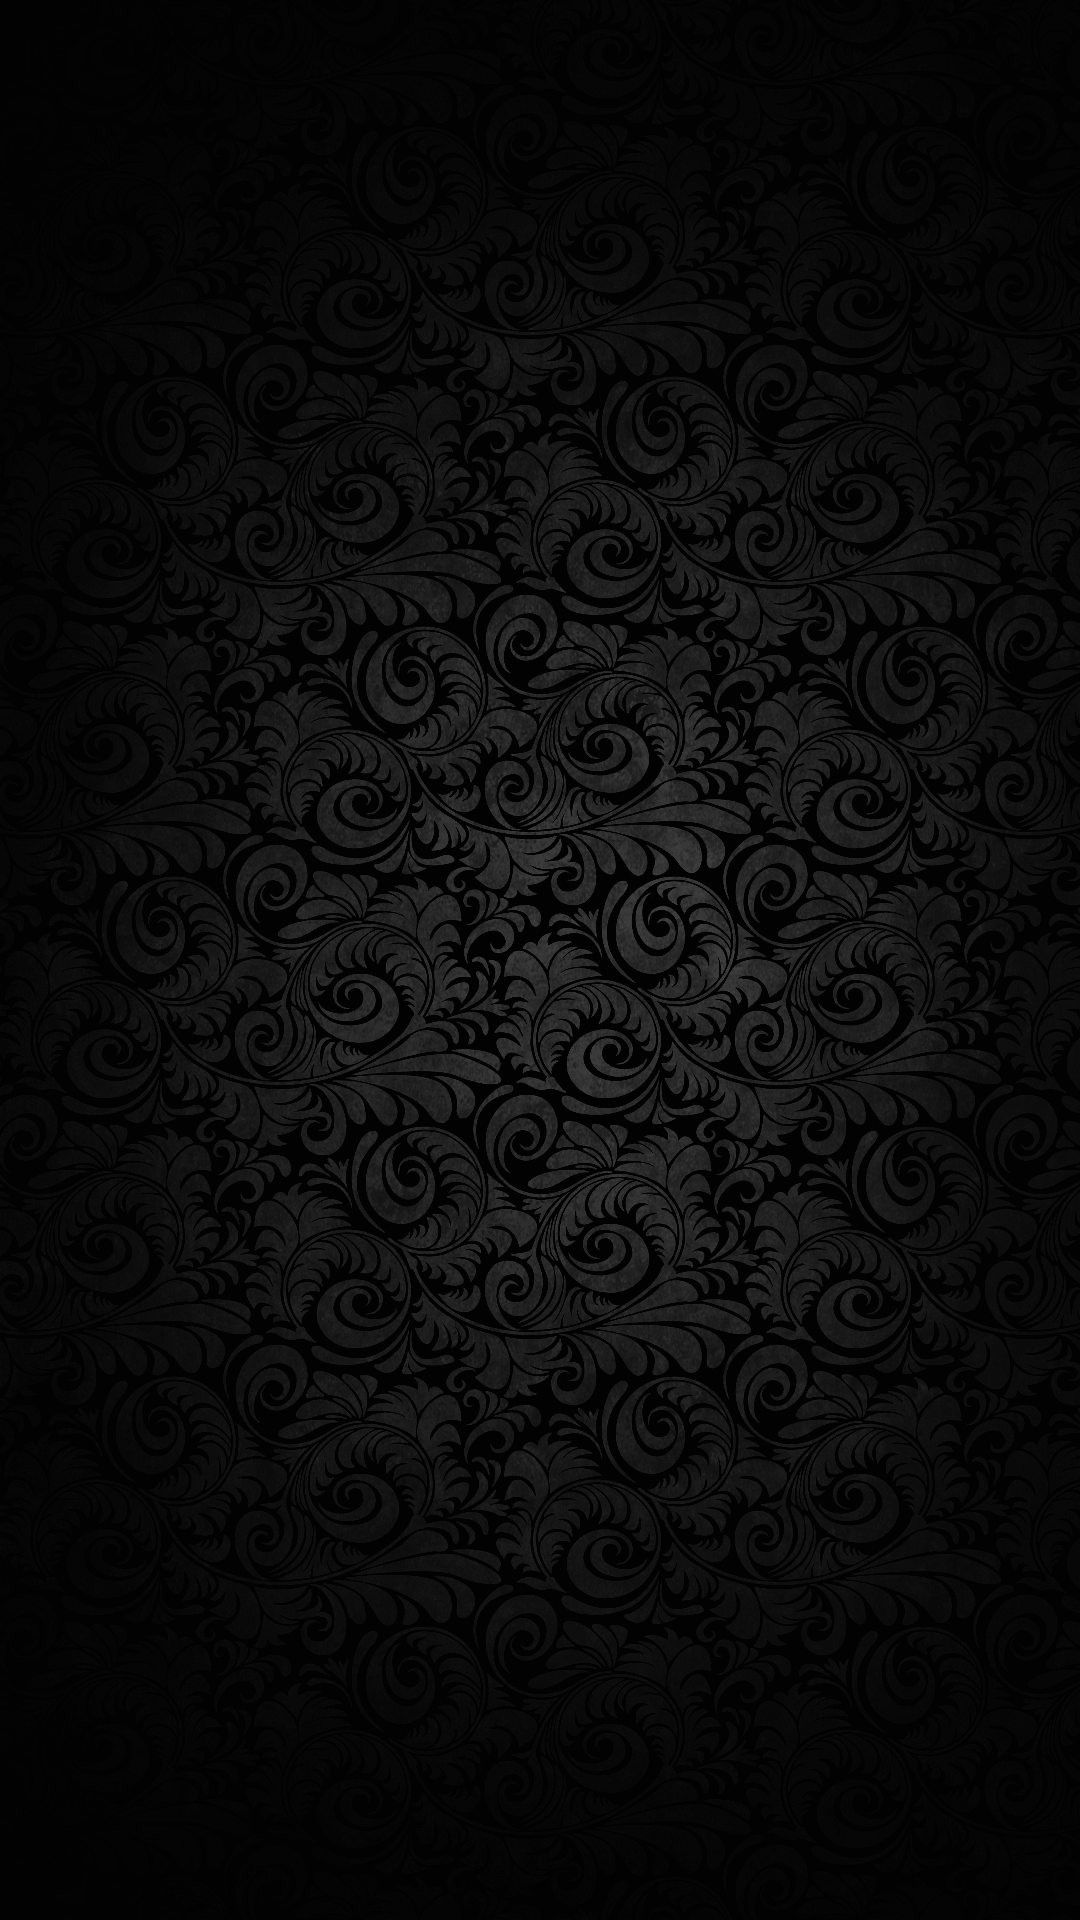 Royal Black Wallpapers - Top Những Hình Ảnh Đẹp